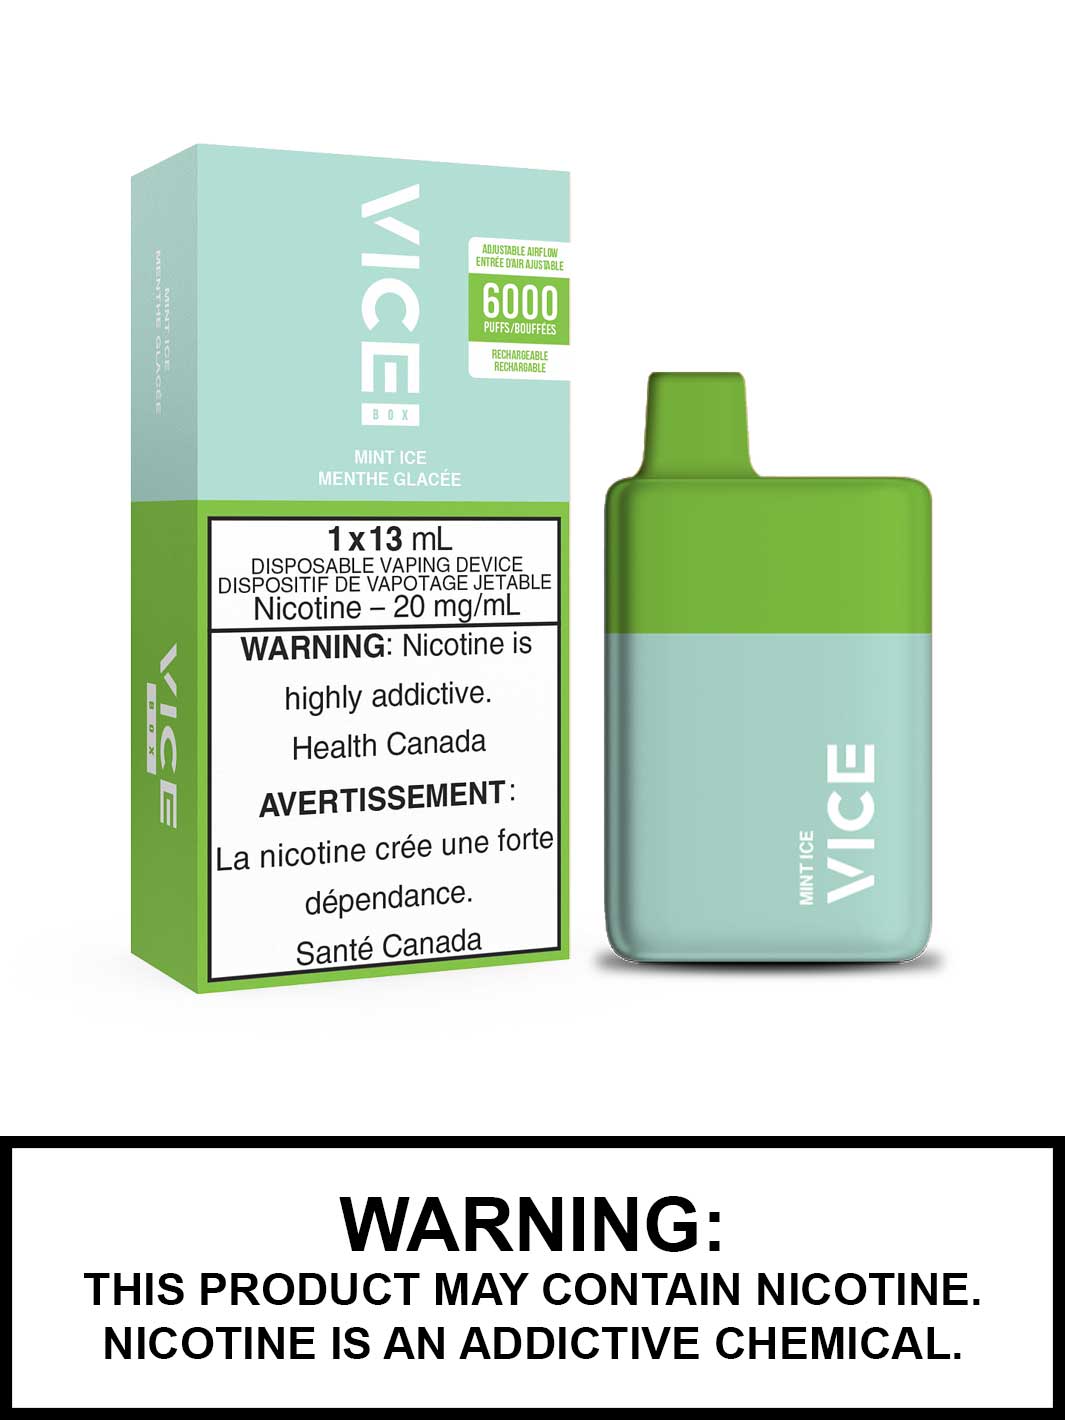 Vice Vape Mint Ice Vice Box Disposable Vape Canada, Vape360